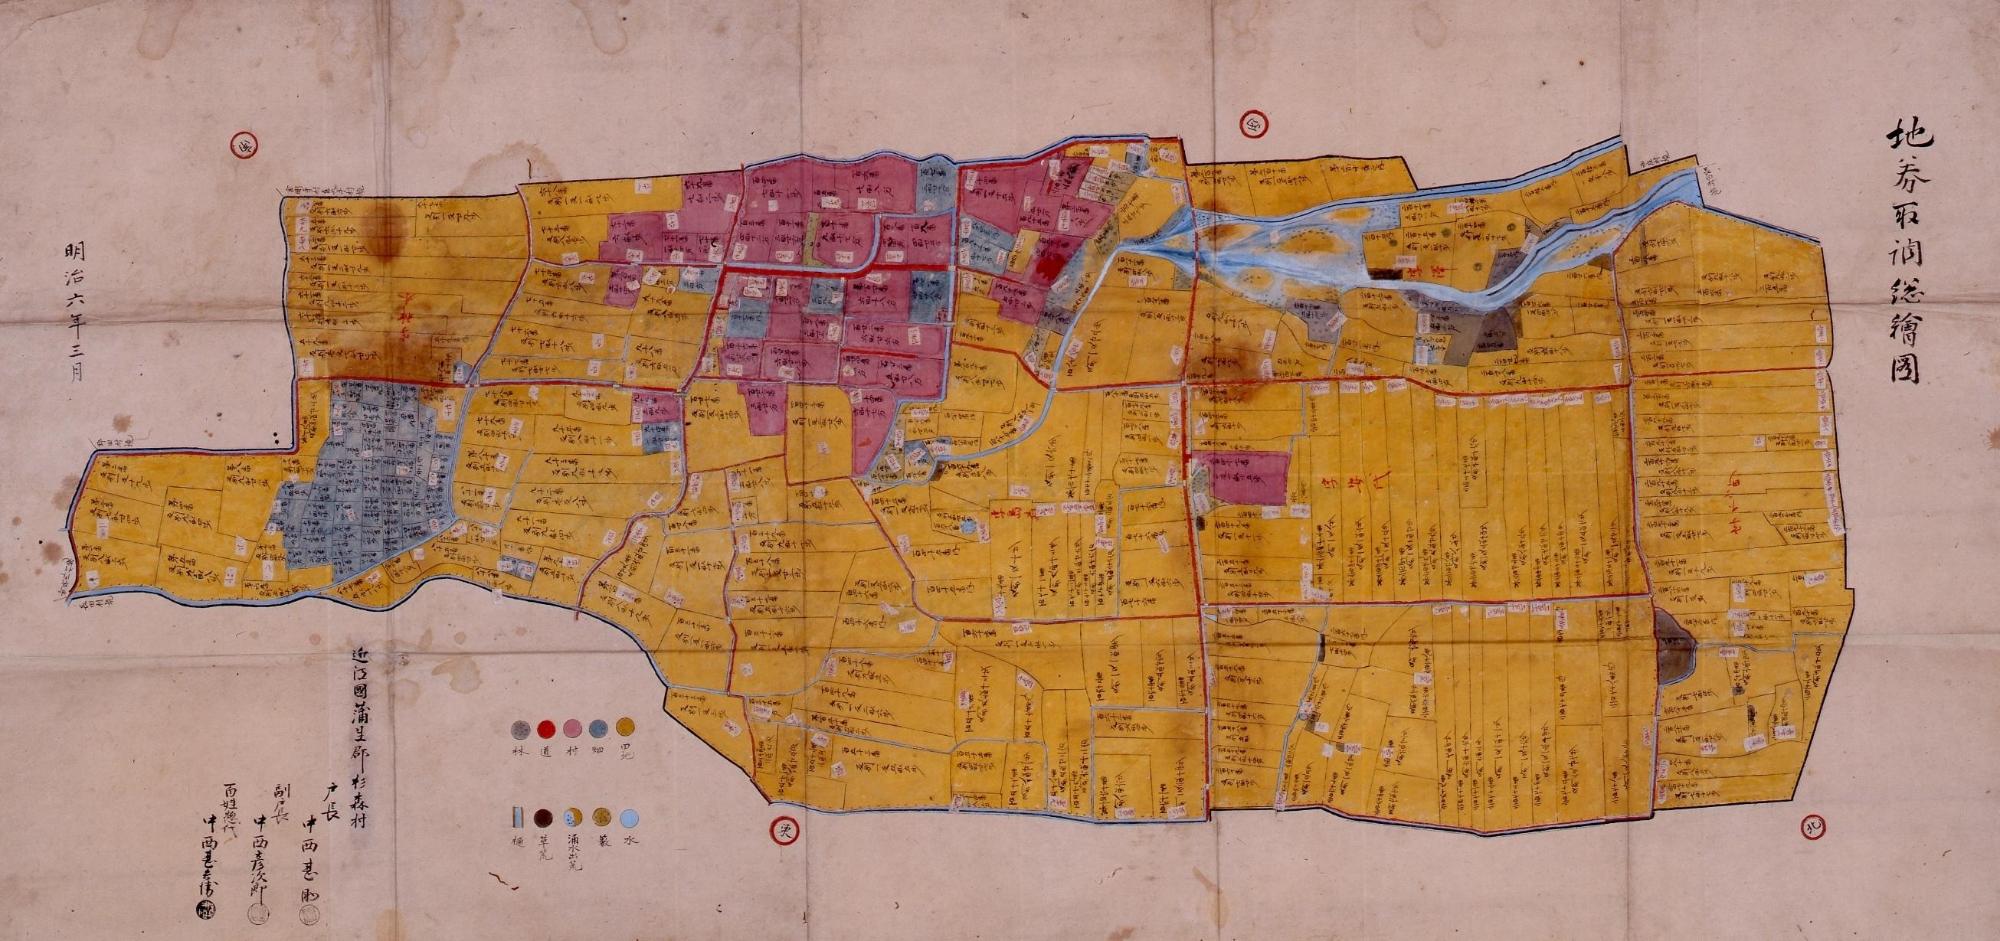 第8巻「通史3明治維新から新市誕生まで」より：近江八幡市の地図の書物